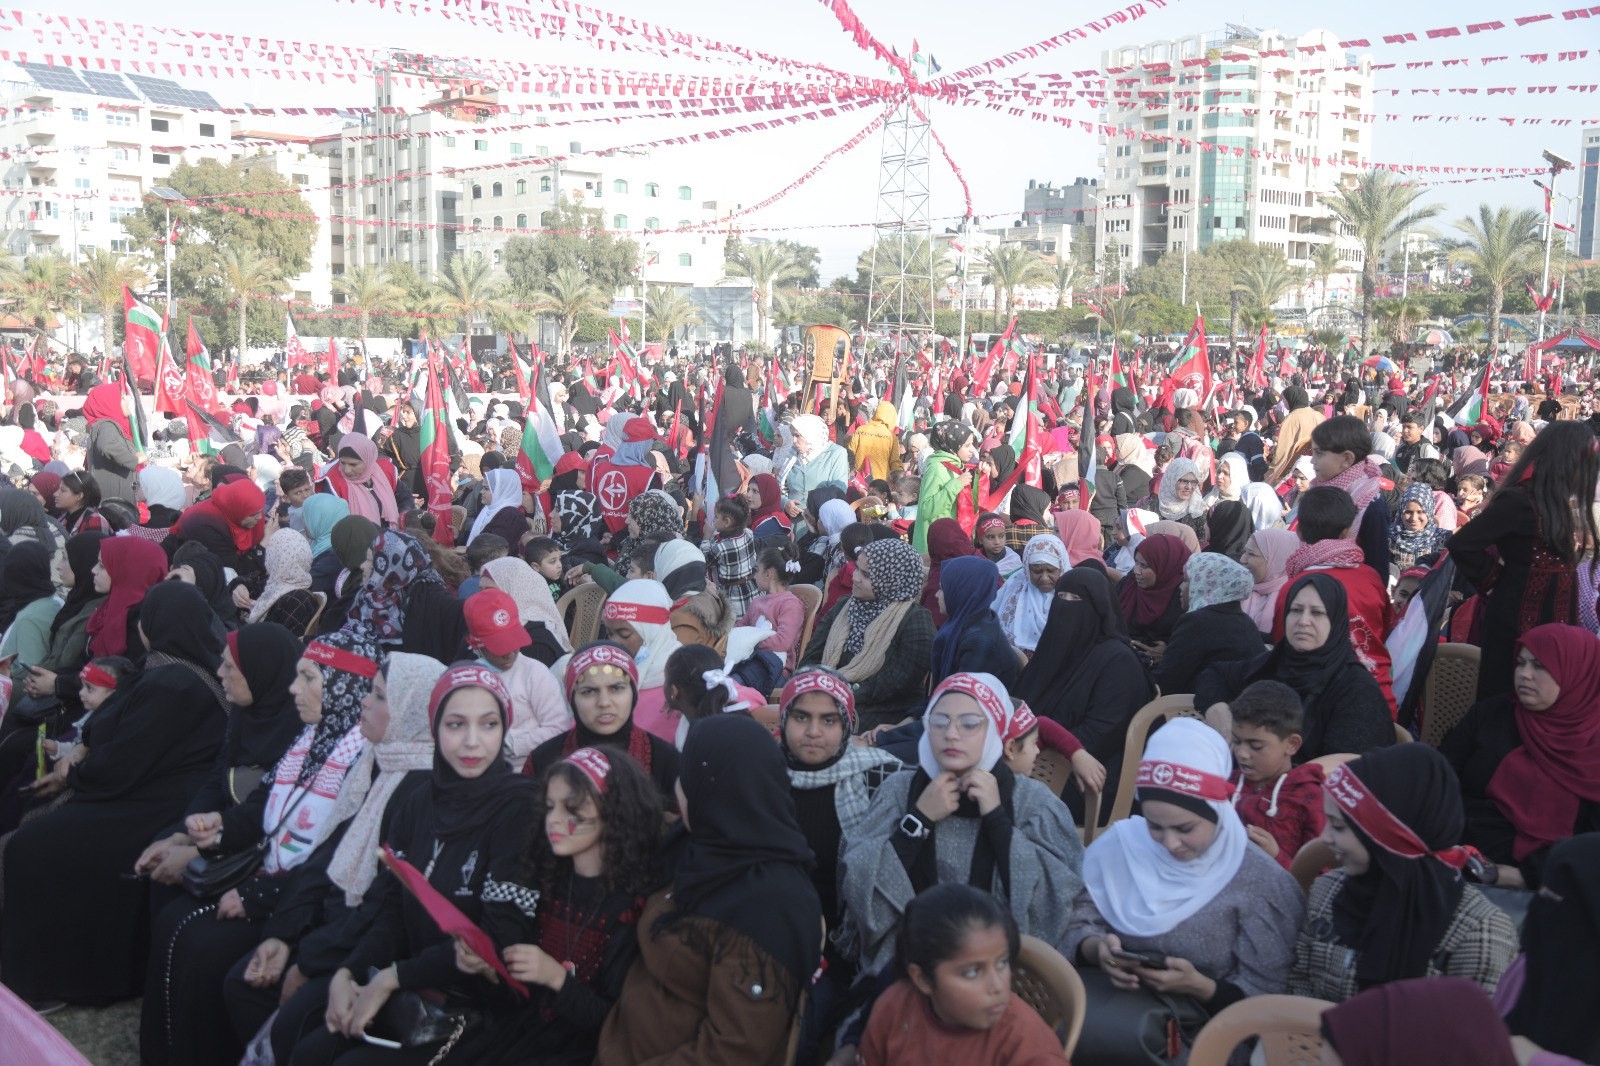 عشرات الآلاف يُشاركون في المهرجان الوطني (انطلاقتنا مقاومة) في ساحة الكتيبة بمدينة غزة لإحياء ذكرى انطلاقة الجبهة الشعبيّة لتحرير فلسطين الـ55. 3.jpg